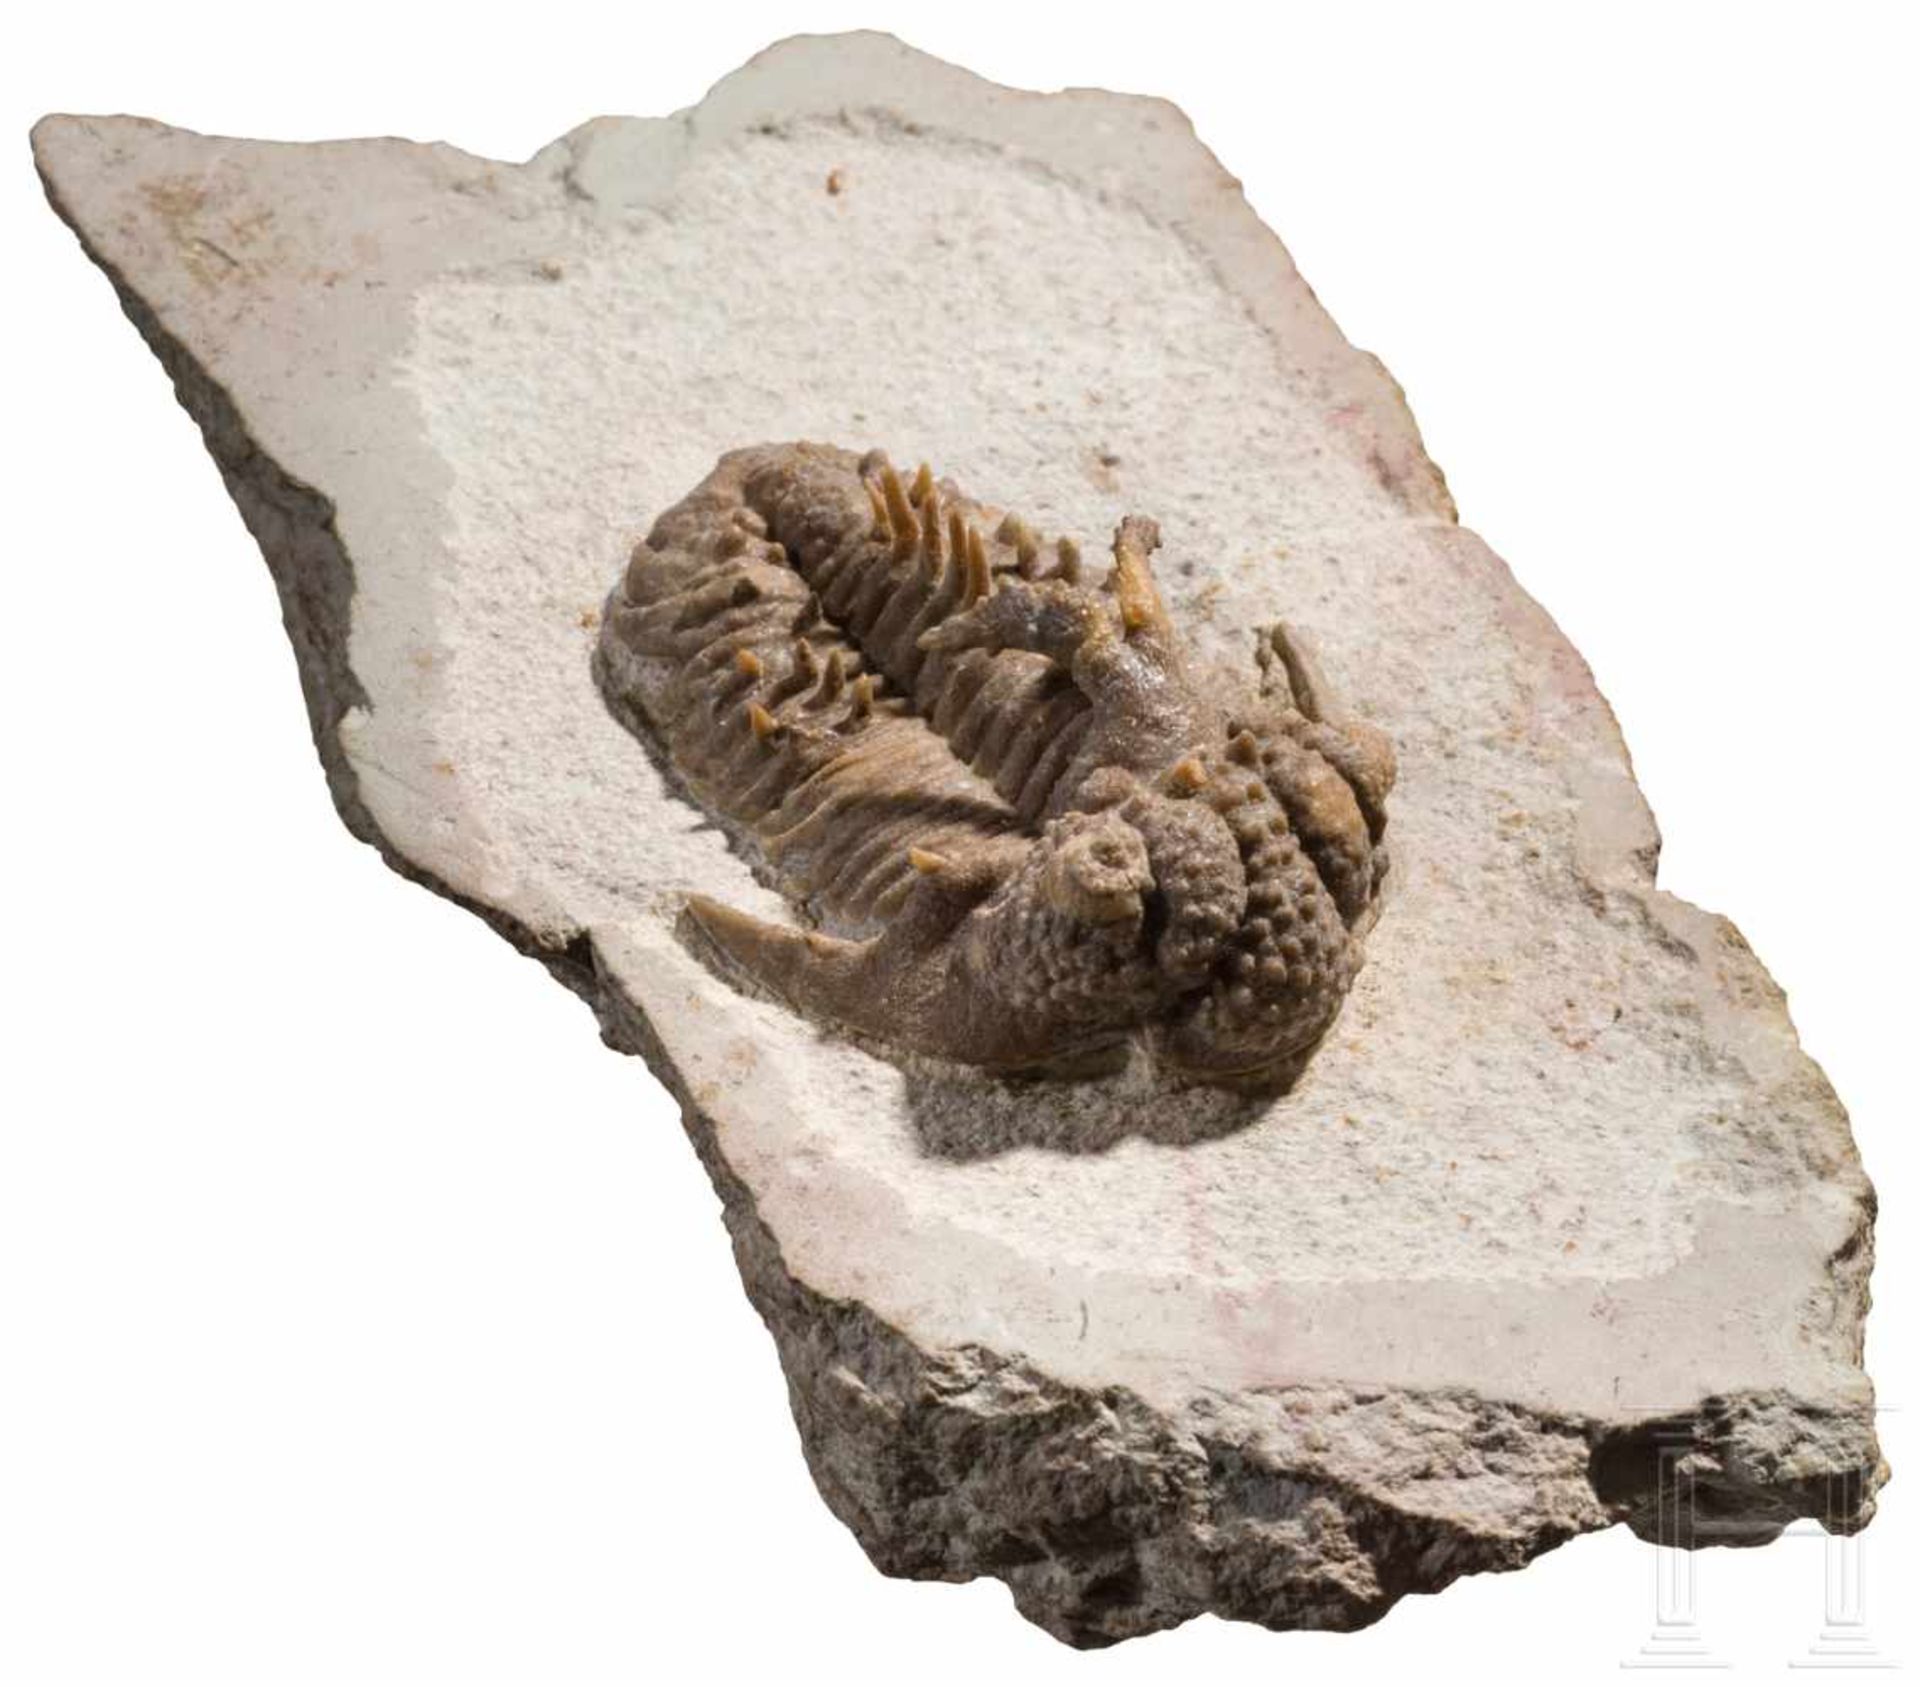 Versteinerter TrilobitSchön herausgearbeiteter Trilobit mit einer Länge von 55 mm. Struktur und